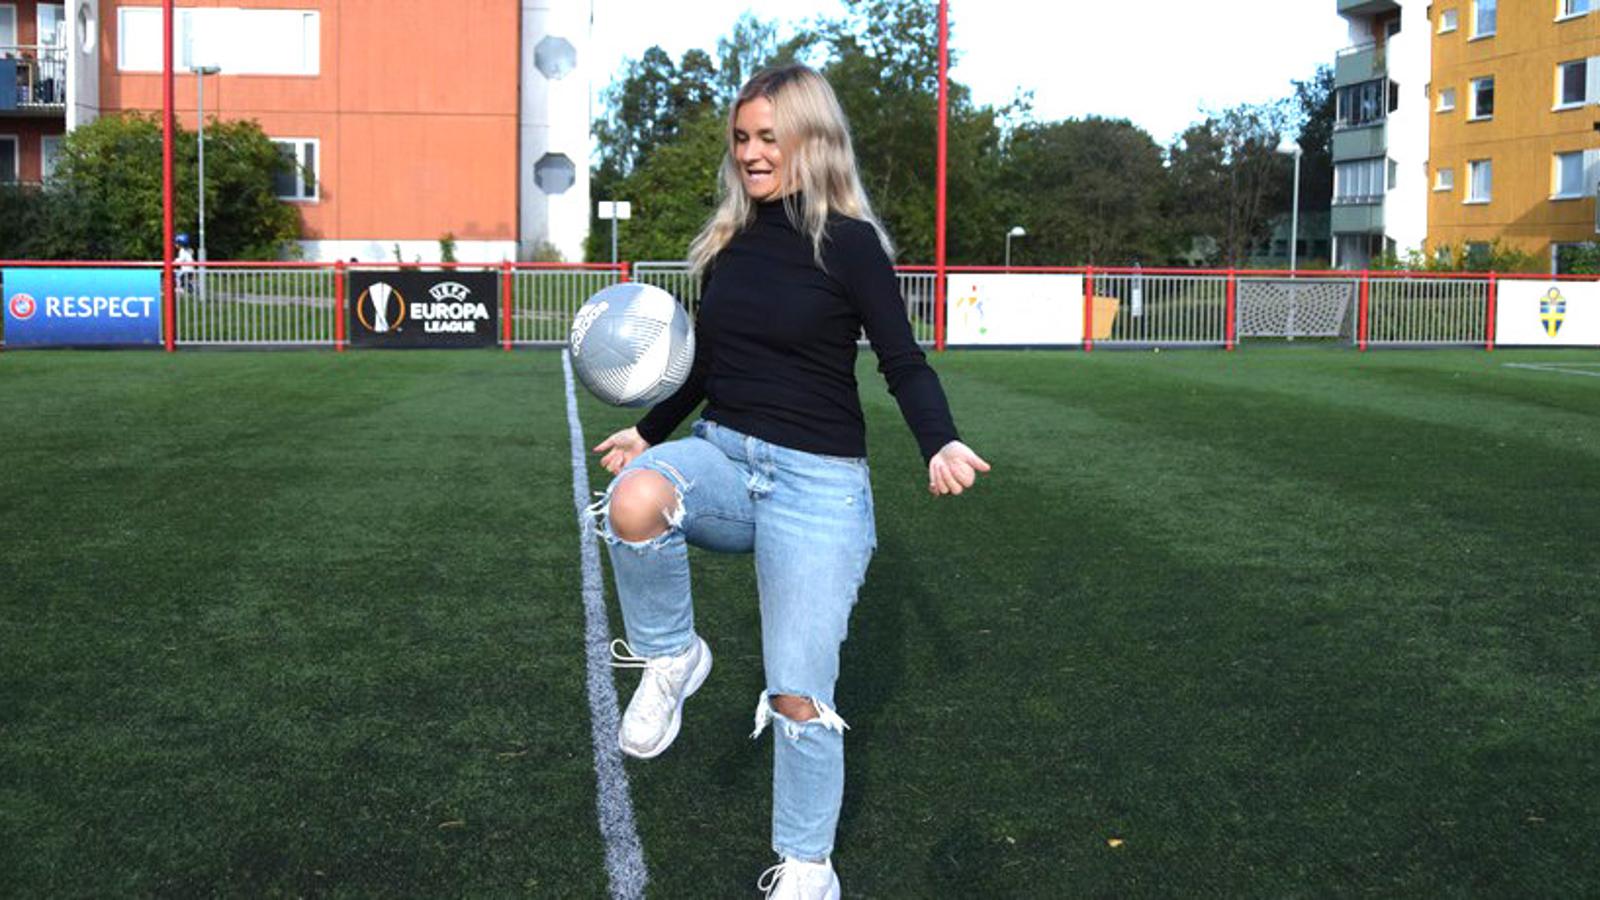 Julia Adolfsson på en fotbollsplan. Hon kickar en fotboll med ena knät.